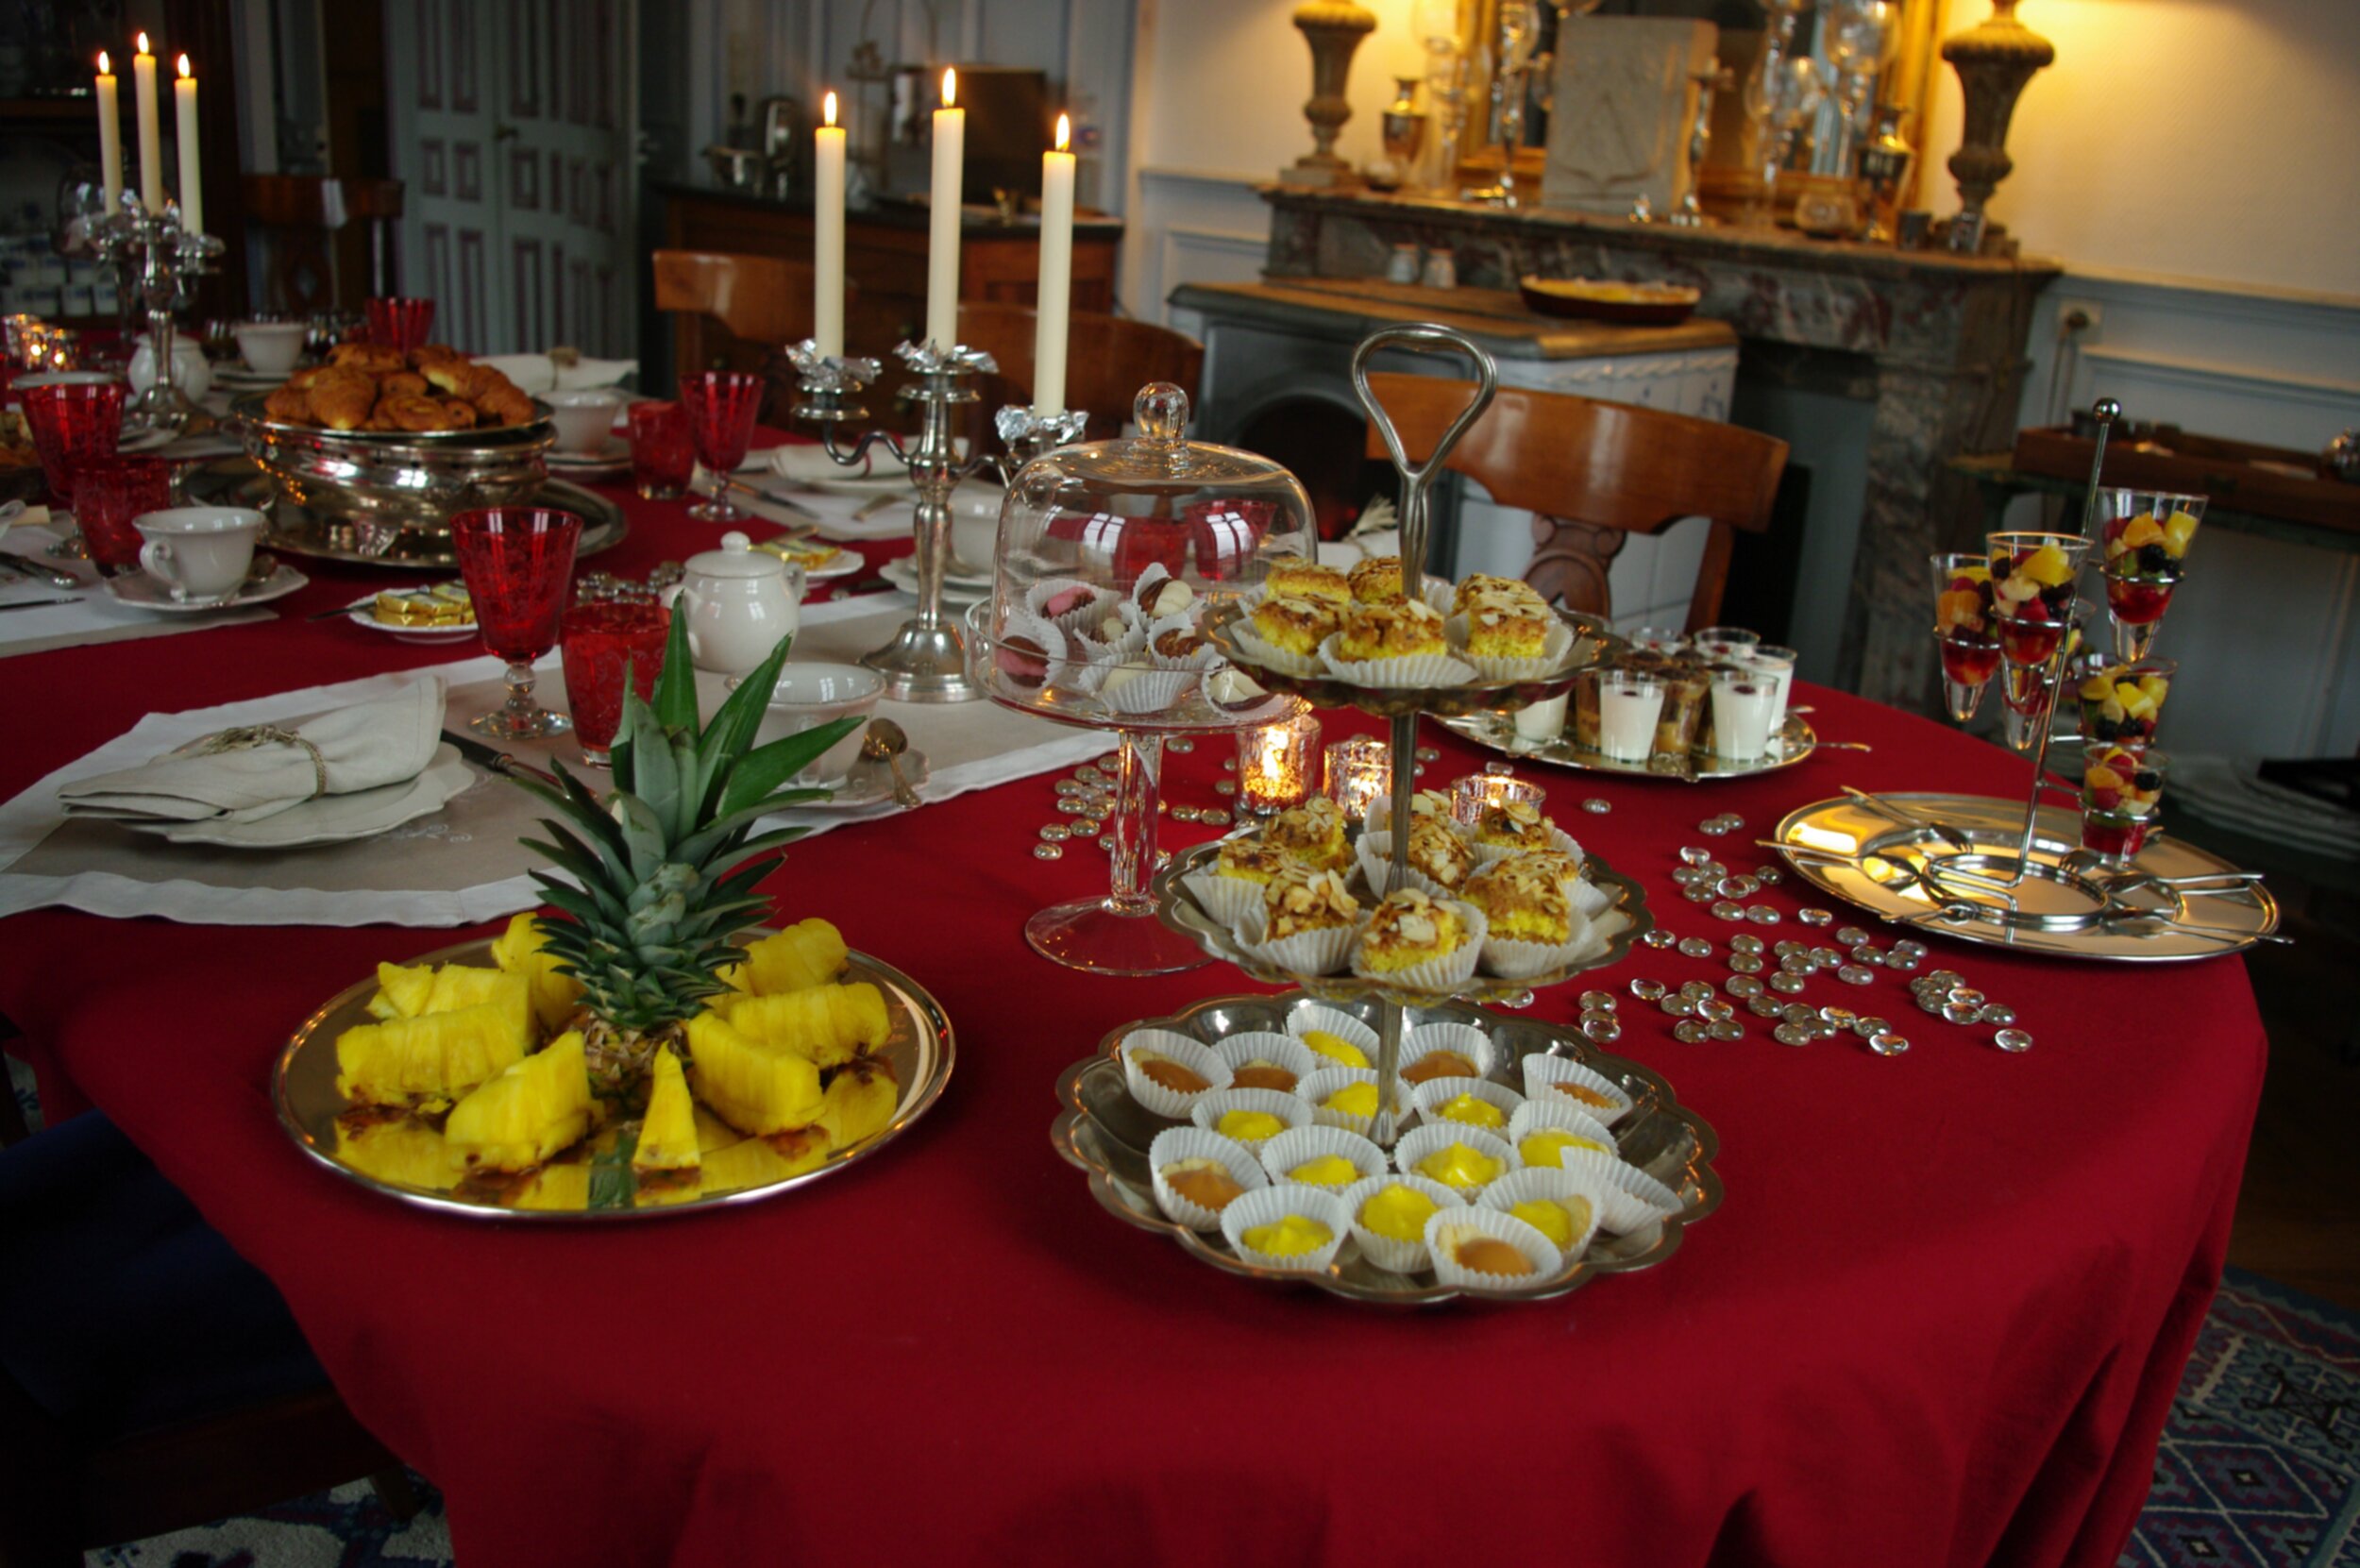 Table de brunch dressées avec une nappe rouge, des gâteaux maisons, des fruits fraîchement coupés et des bougies